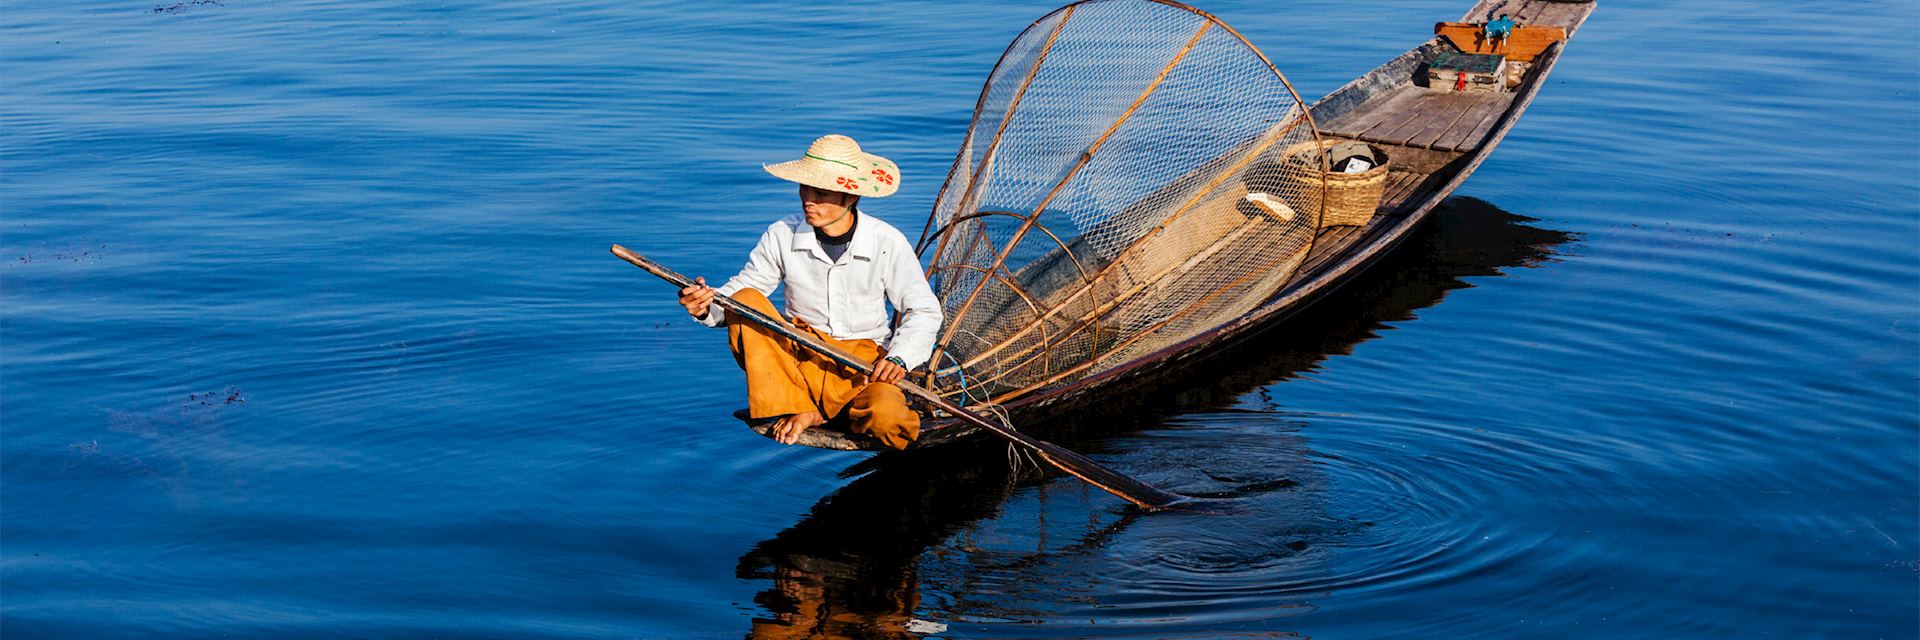  Fisherman on Inle Lake, Myanmar